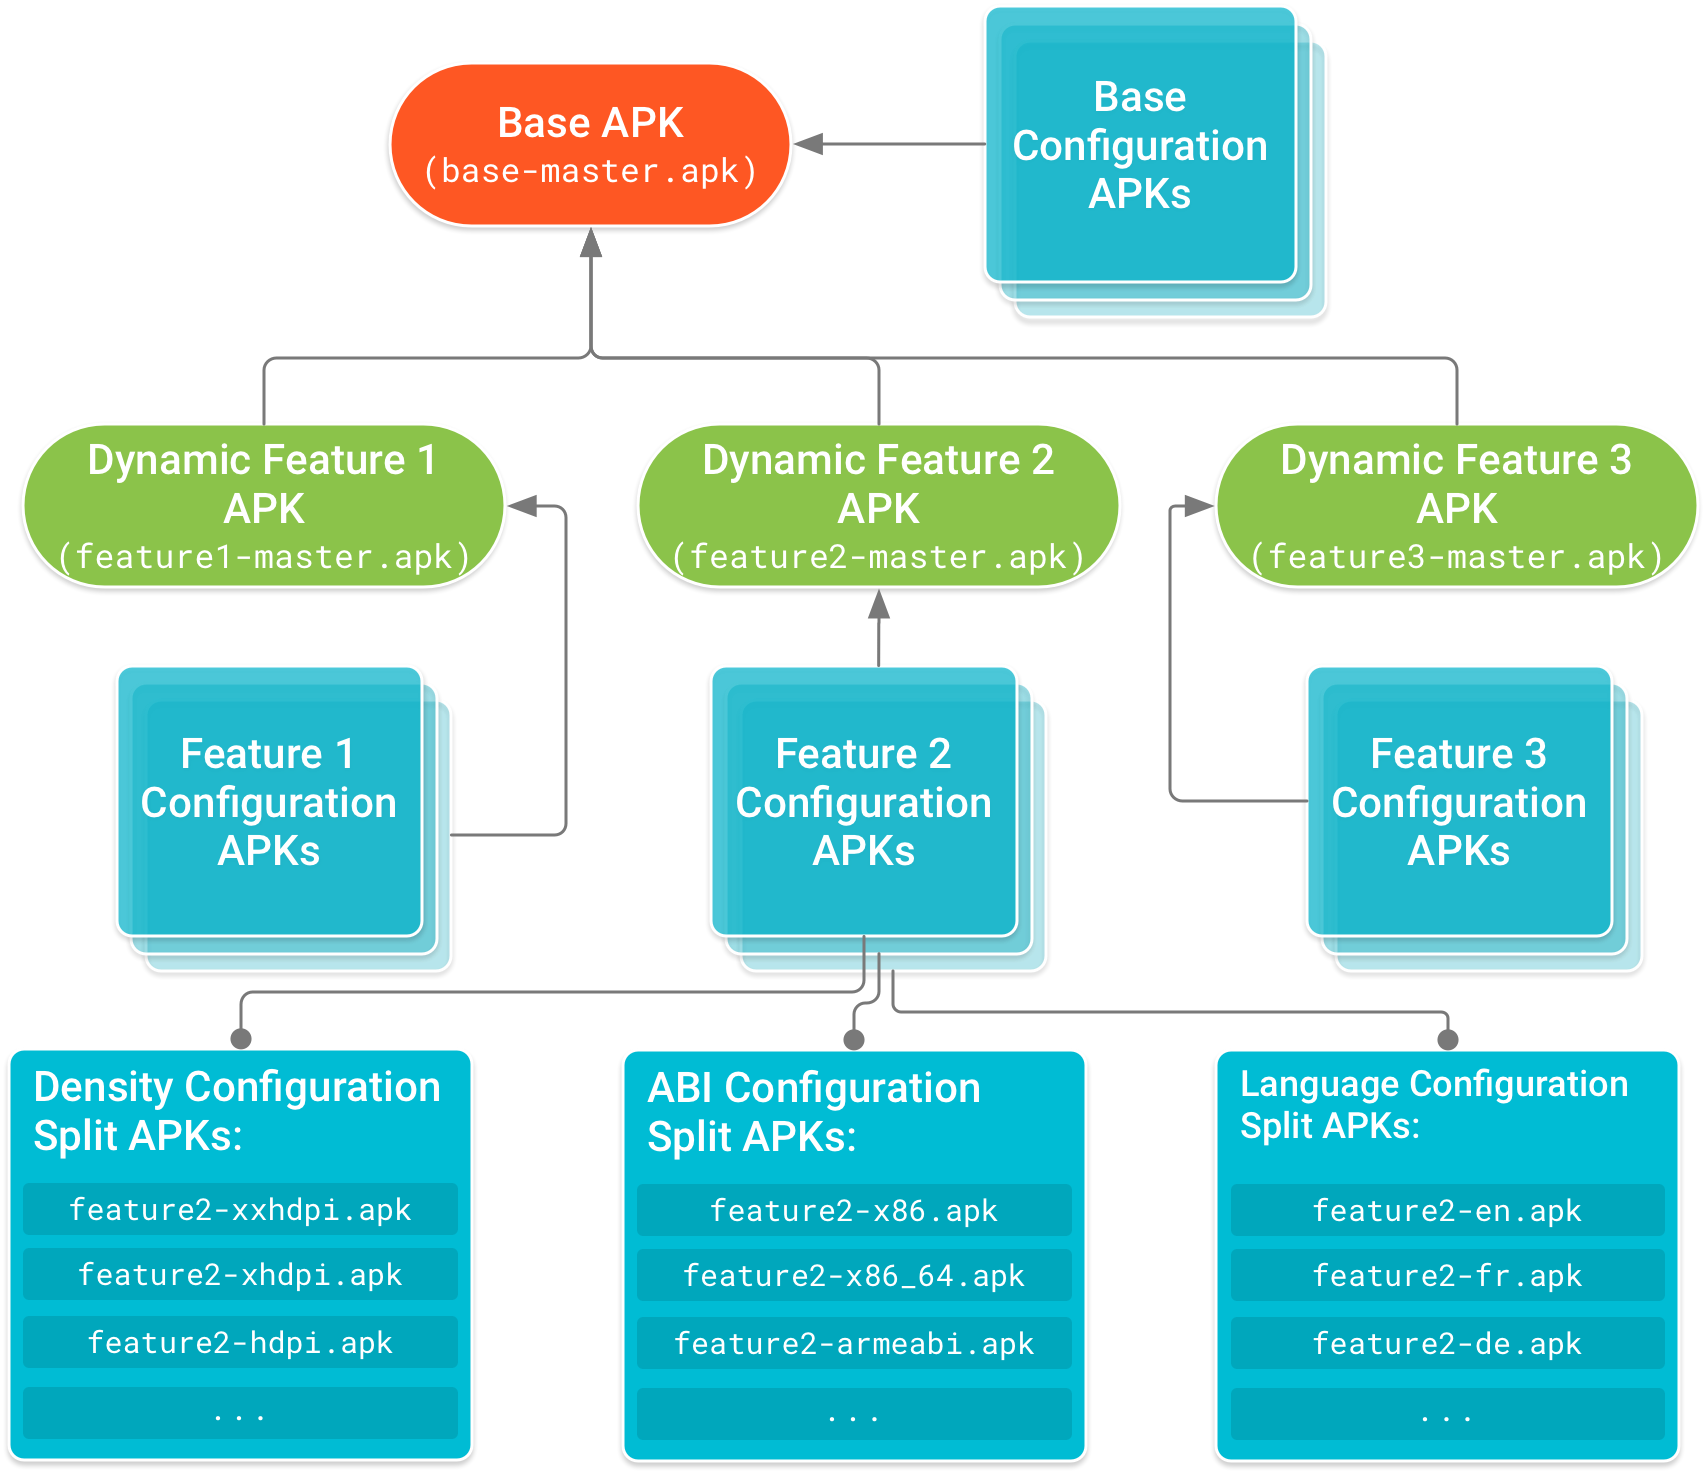 Podstawowy plik APK znajduje się w górnej części drzewa, a od niego zależą pakiety APK modułu funkcji. Pliki APK konfiguracji, które zawierają kod specyficzny dla konfiguracji urządzenia oraz zasoby pliku APK podstawowego i każdego modułu funkcji, tworzą węzły liści drzewa zależności.